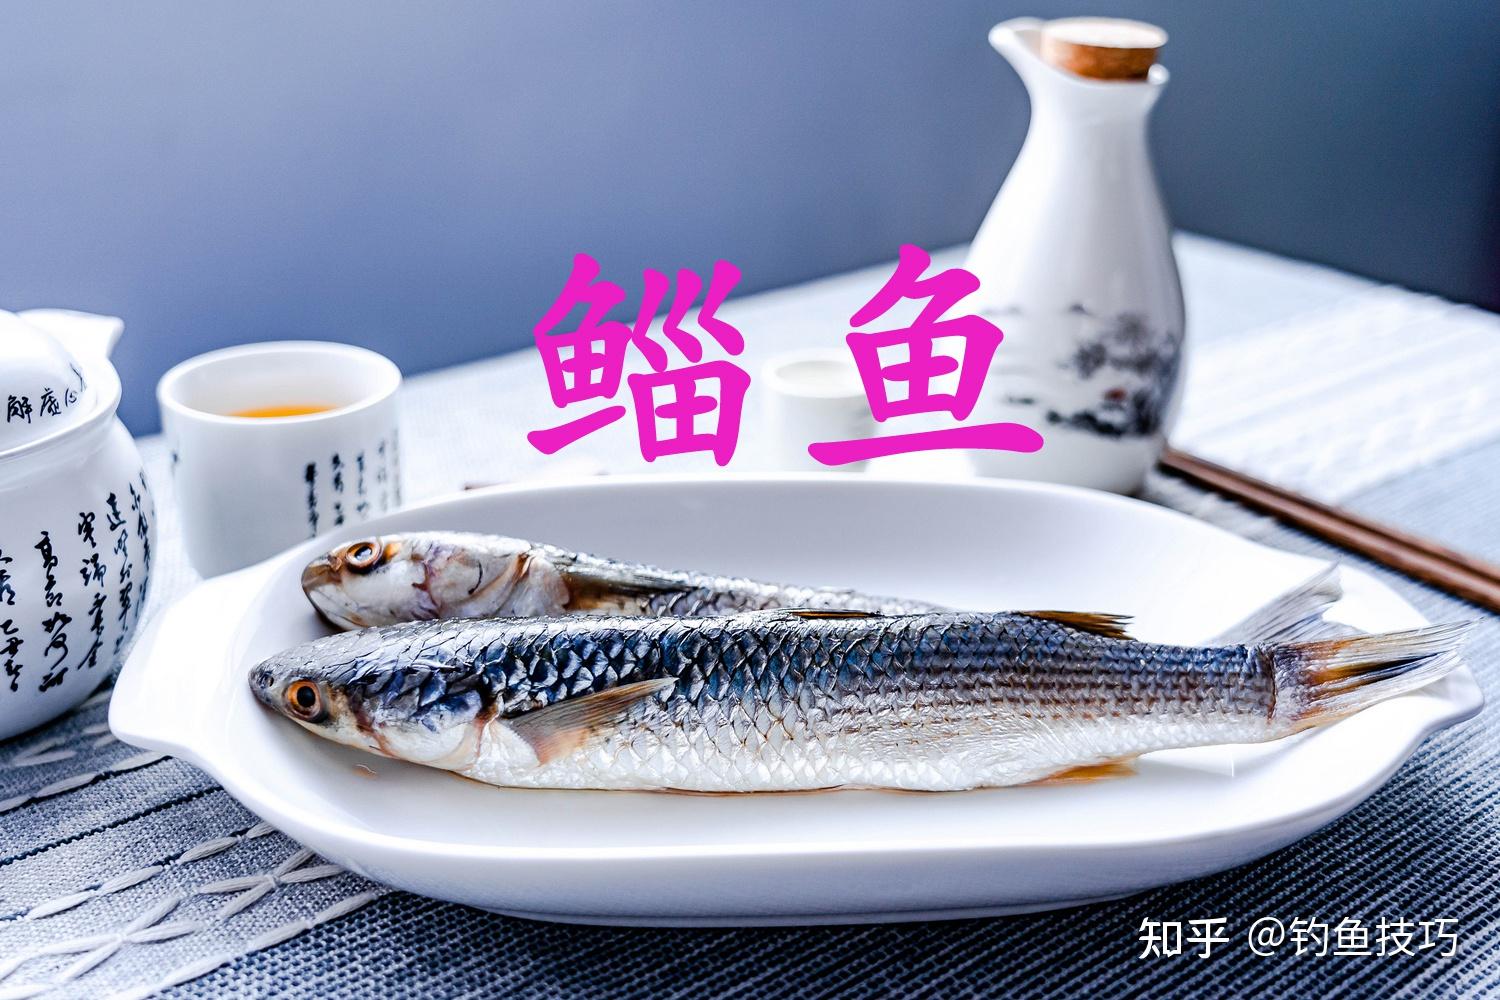 鲭鱼的做法,鲭鱼的习性,鲭鱼的营养价值,鲭鱼配什么好吃_齐家网